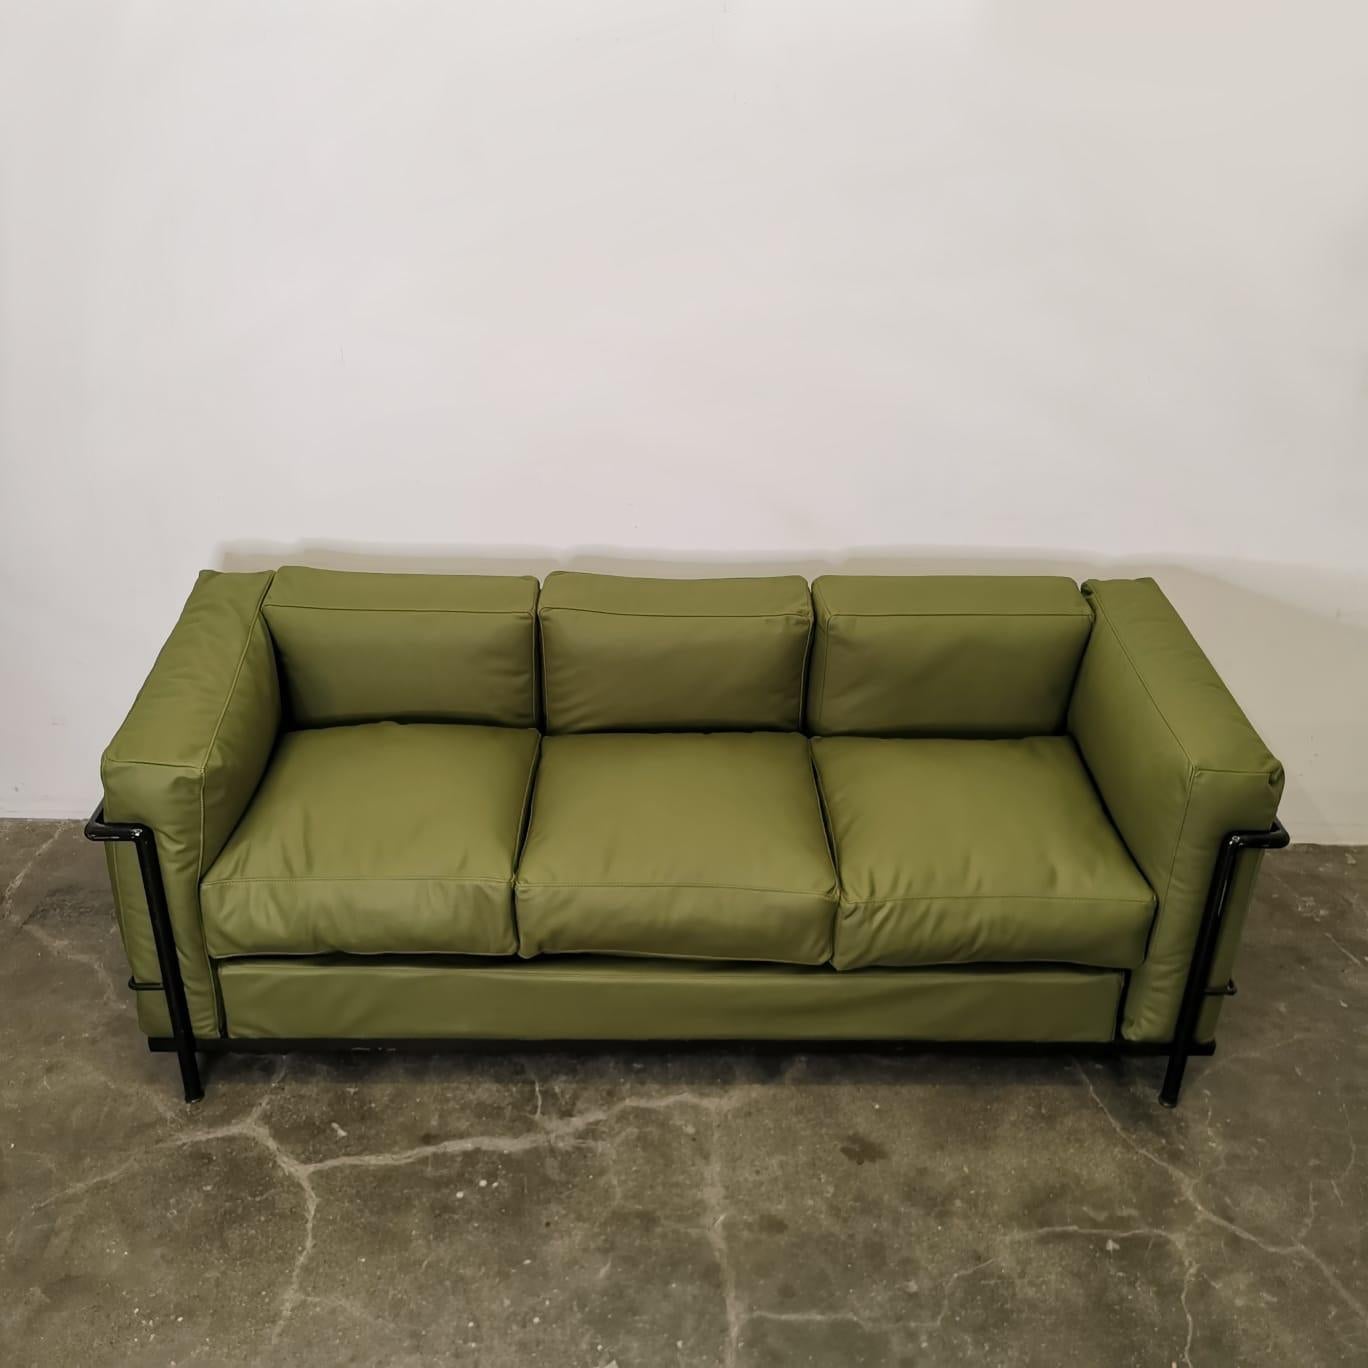 Le canapé LC2, conçu par Le Corbusier, est une véritable icône du mobilier moderne. Avec ses lignes épurées, son esthétique minimaliste et sa fabrication impeccable, ce canapé incarne à la fois le confort et le style.Le canapé LC2 est doté d'une